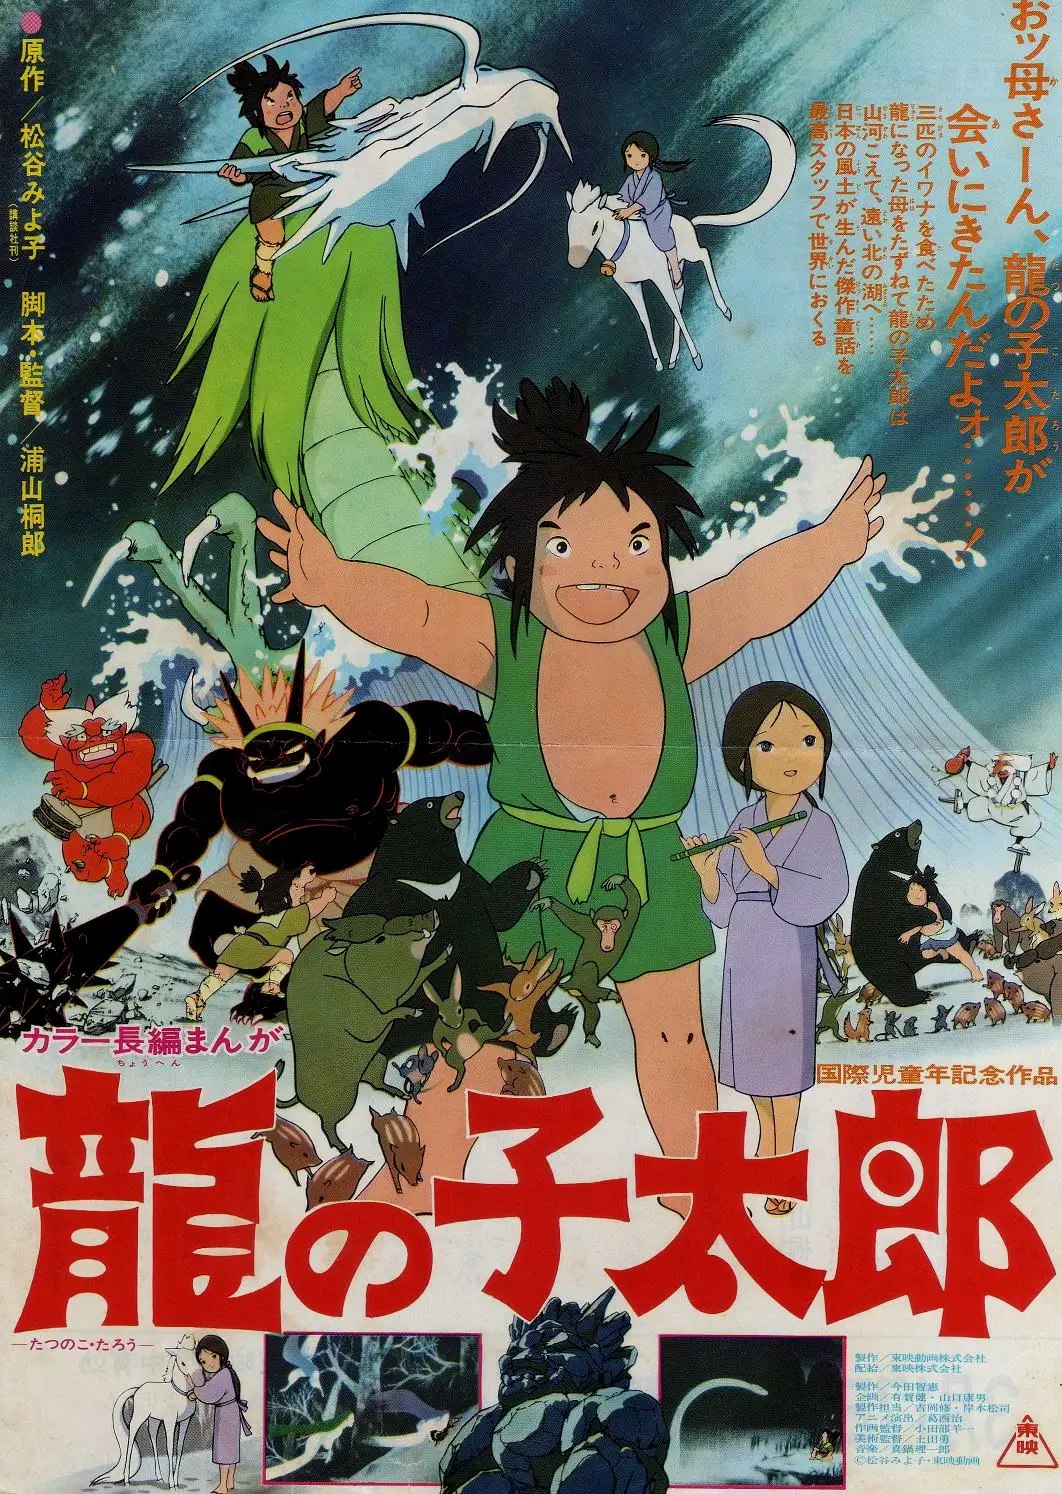 1979年的东映的动画长篇《龙子太郎》，同年底由上海电影制片厂译制引进，据传说是中国最早的公开引进的资本主义世界的动画